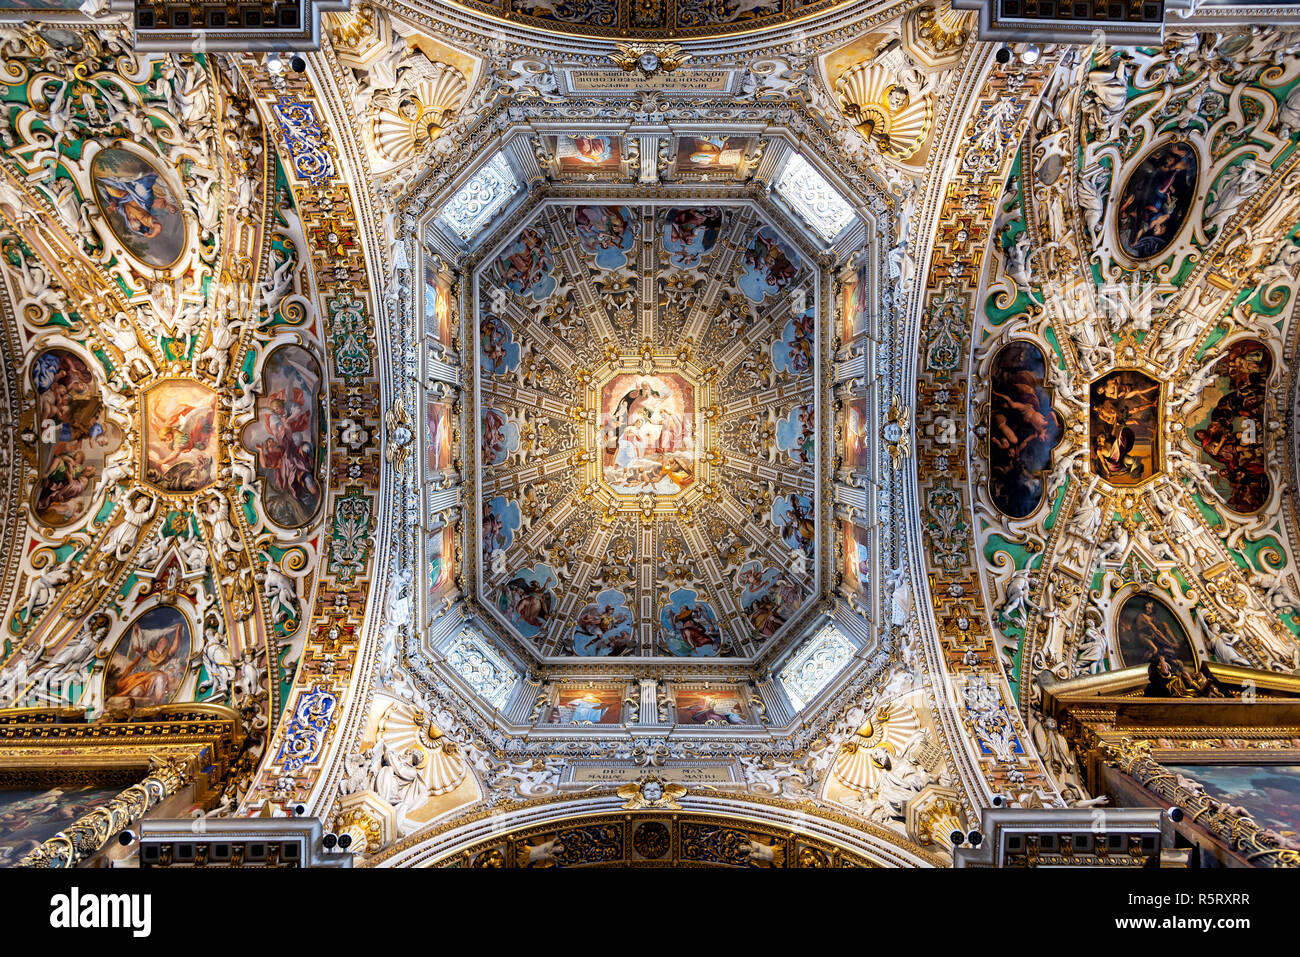 Bergame, Italie - 15 septembre 2018 : vue sur le plafond de la Basilique de Santa Maria Maggiore. Cette basilique a été fondée en 1137. Banque D'Images